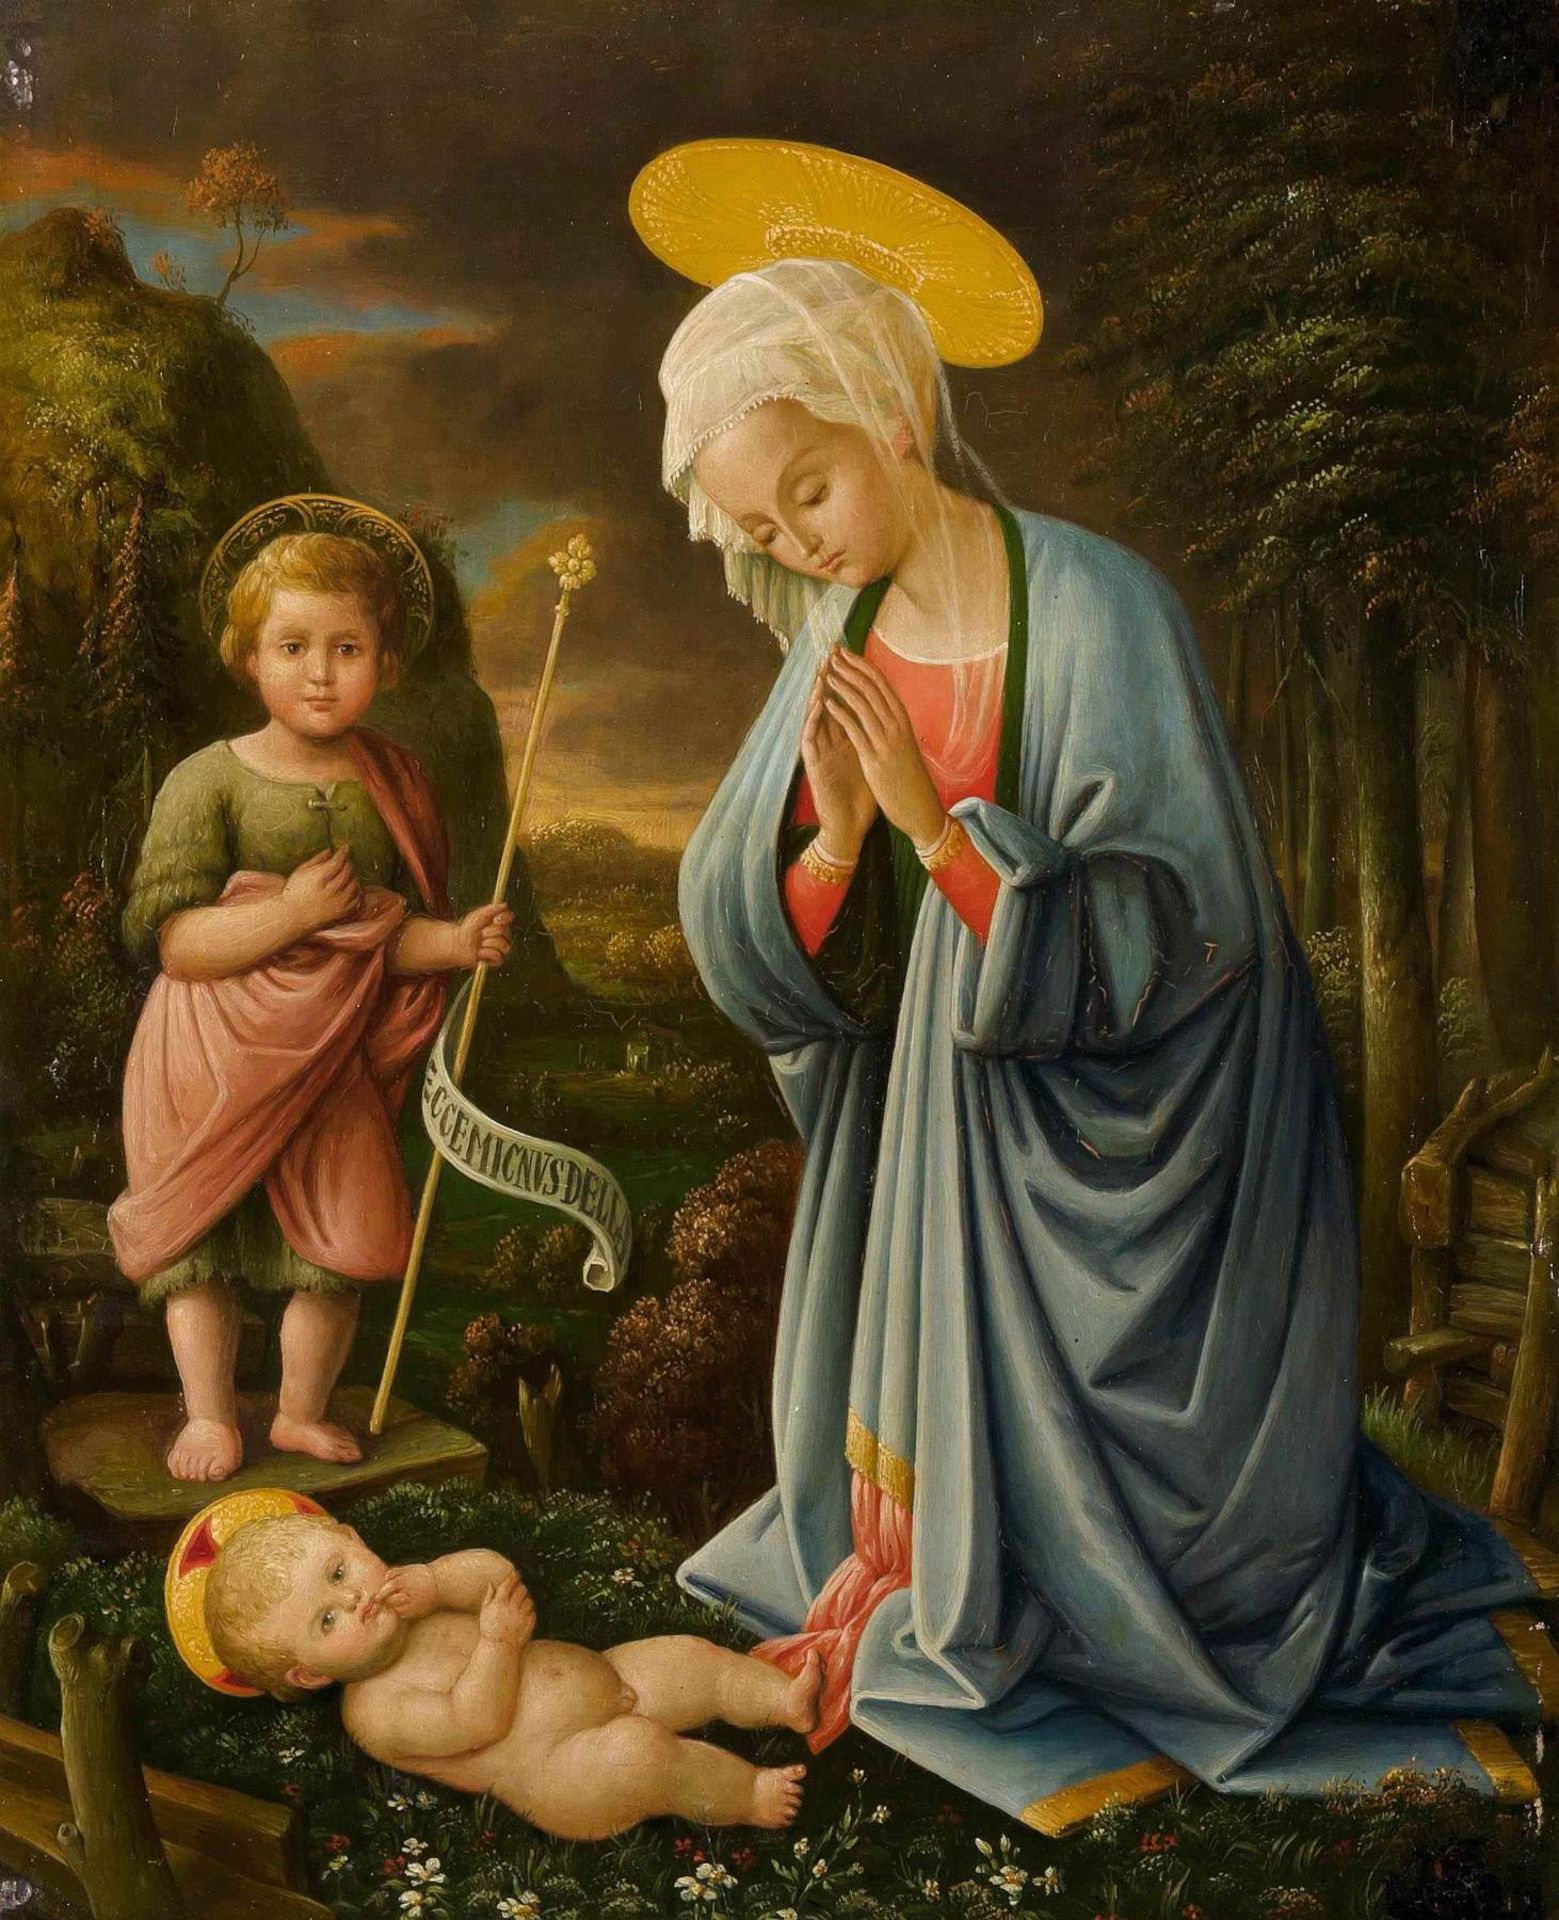 Anonym, Ende 19.Jh.
im Stile des 16. Jhs.
Maria mit Jesus und Johannesknaben. Öl auf Holz. 44,6x36